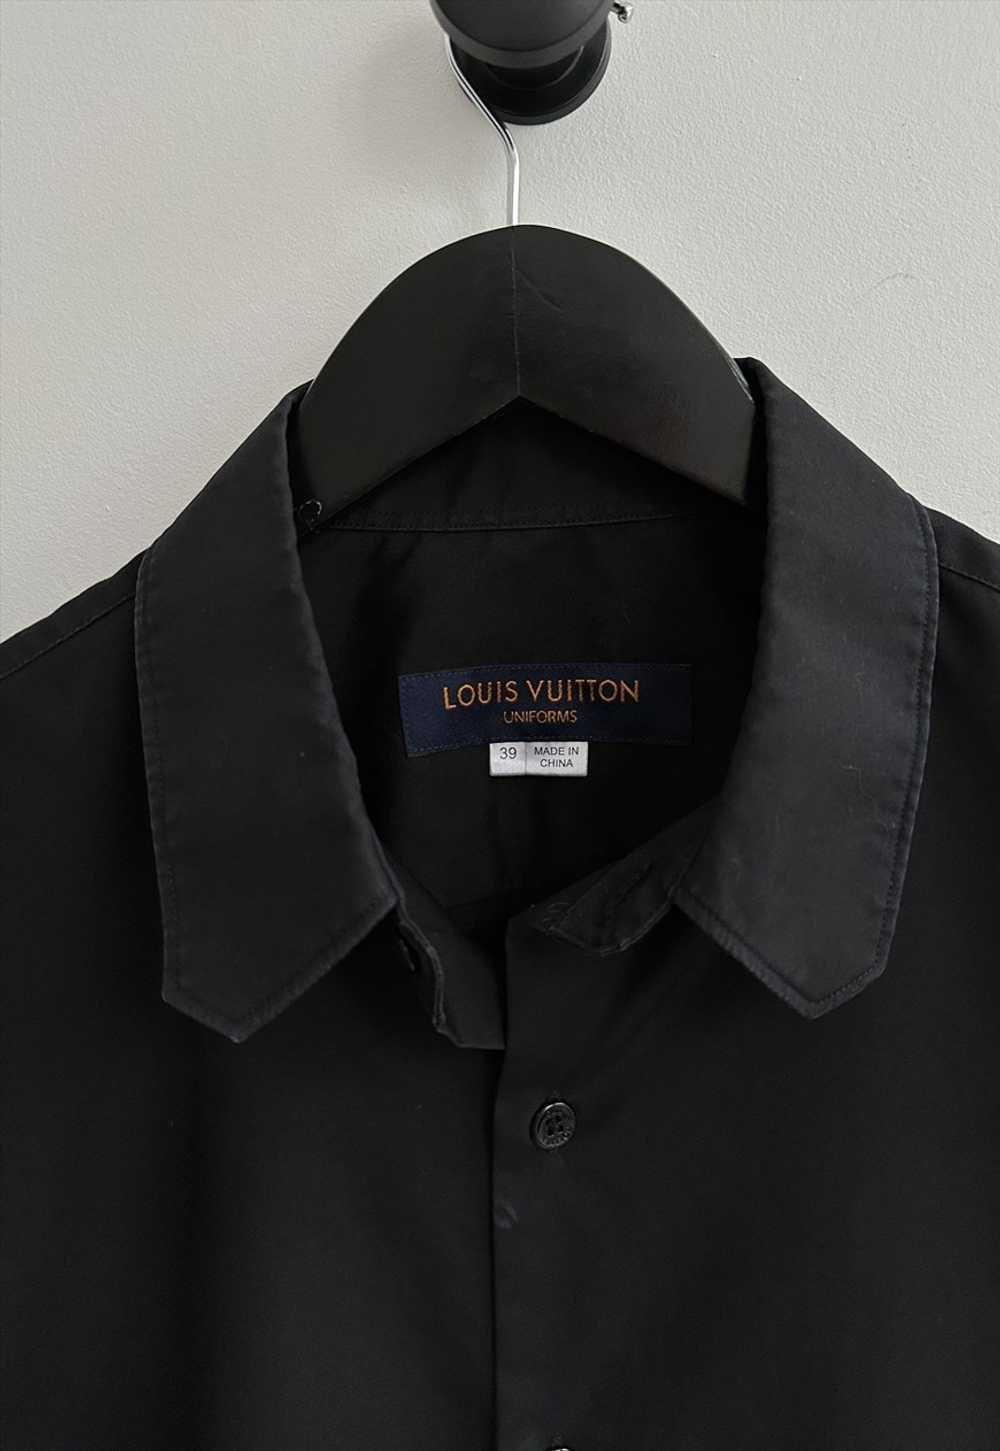 Louis Vuitton Uniforms Black Shirt - image 3